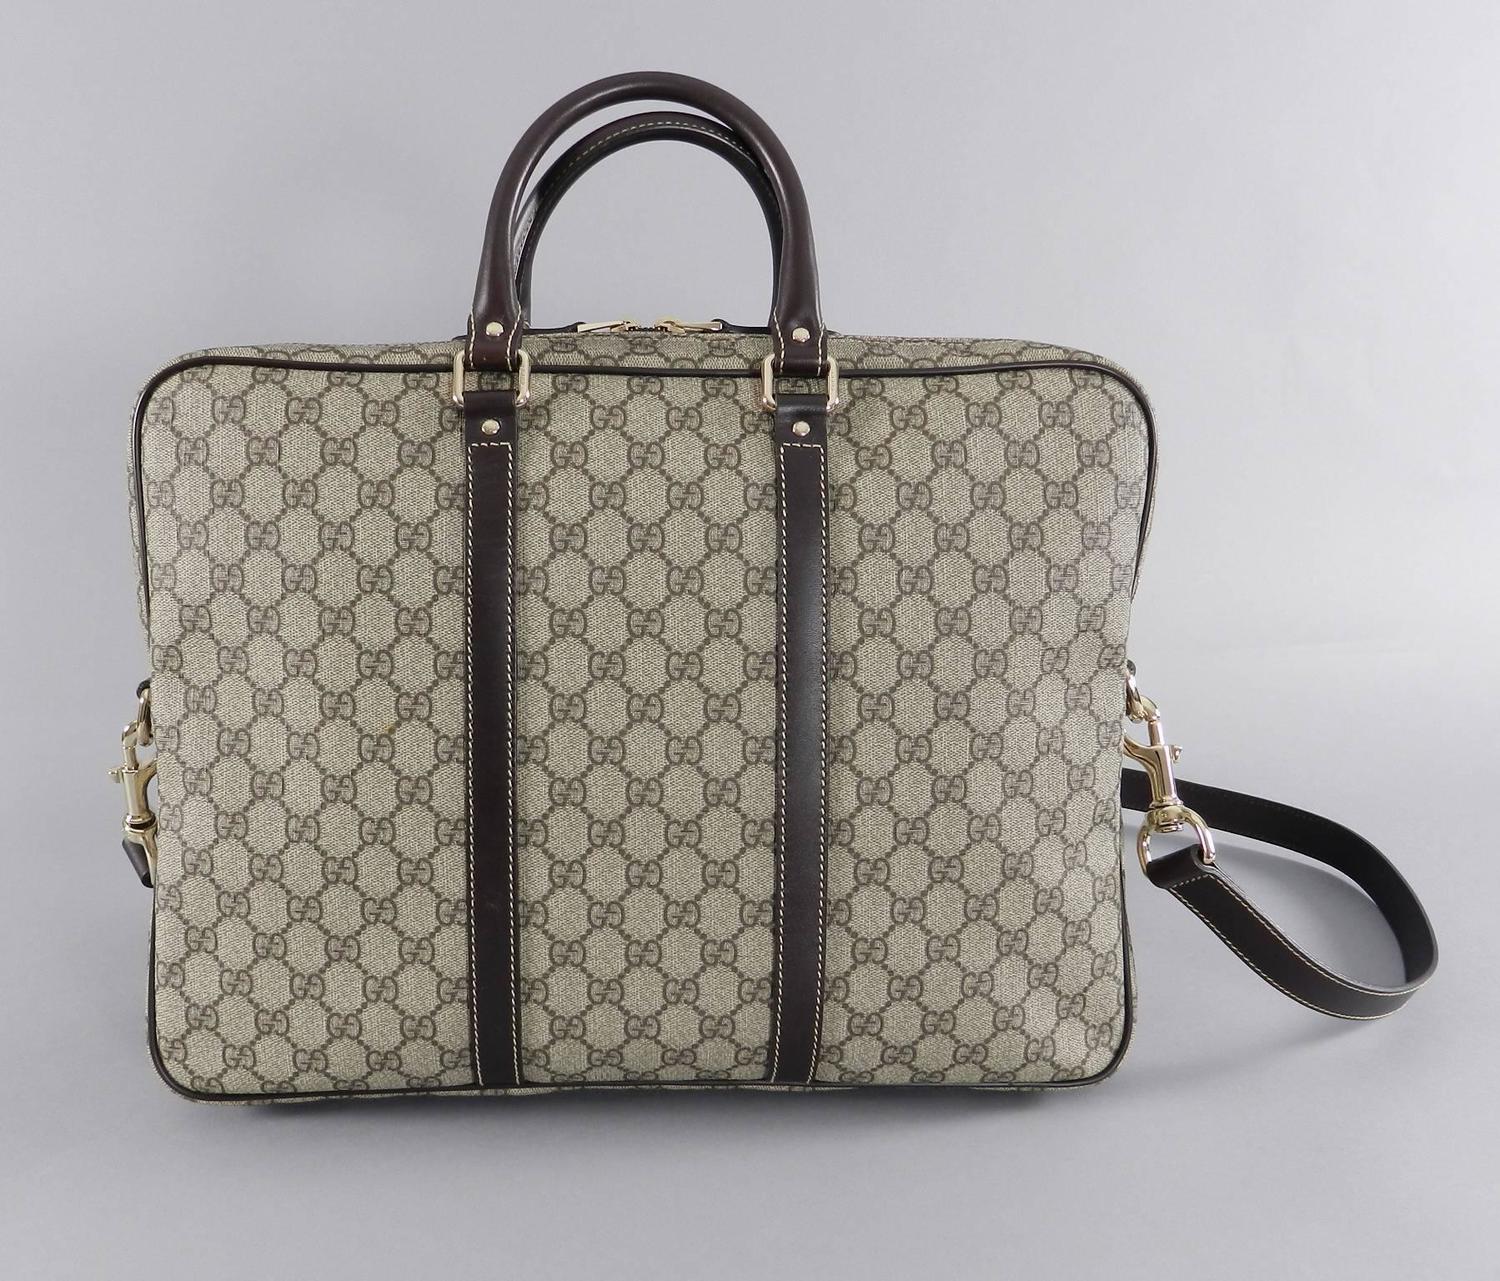 Gucci Supreme Monogam Briefcase / Laptop Messenger Bag For Sale at 1stdibs